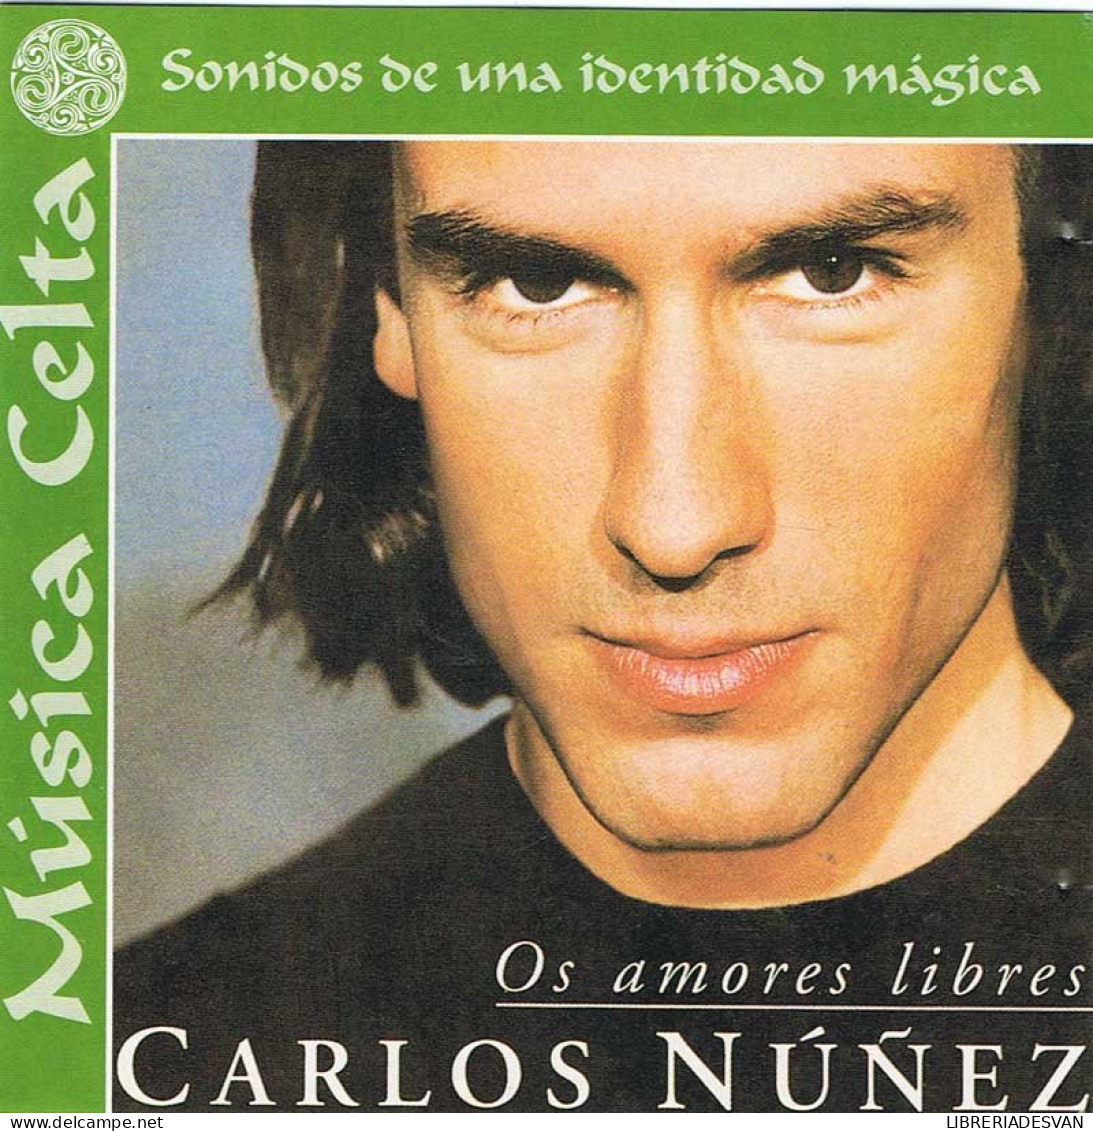 Carlos Núñez - Os Amores Libres. CD - Country & Folk